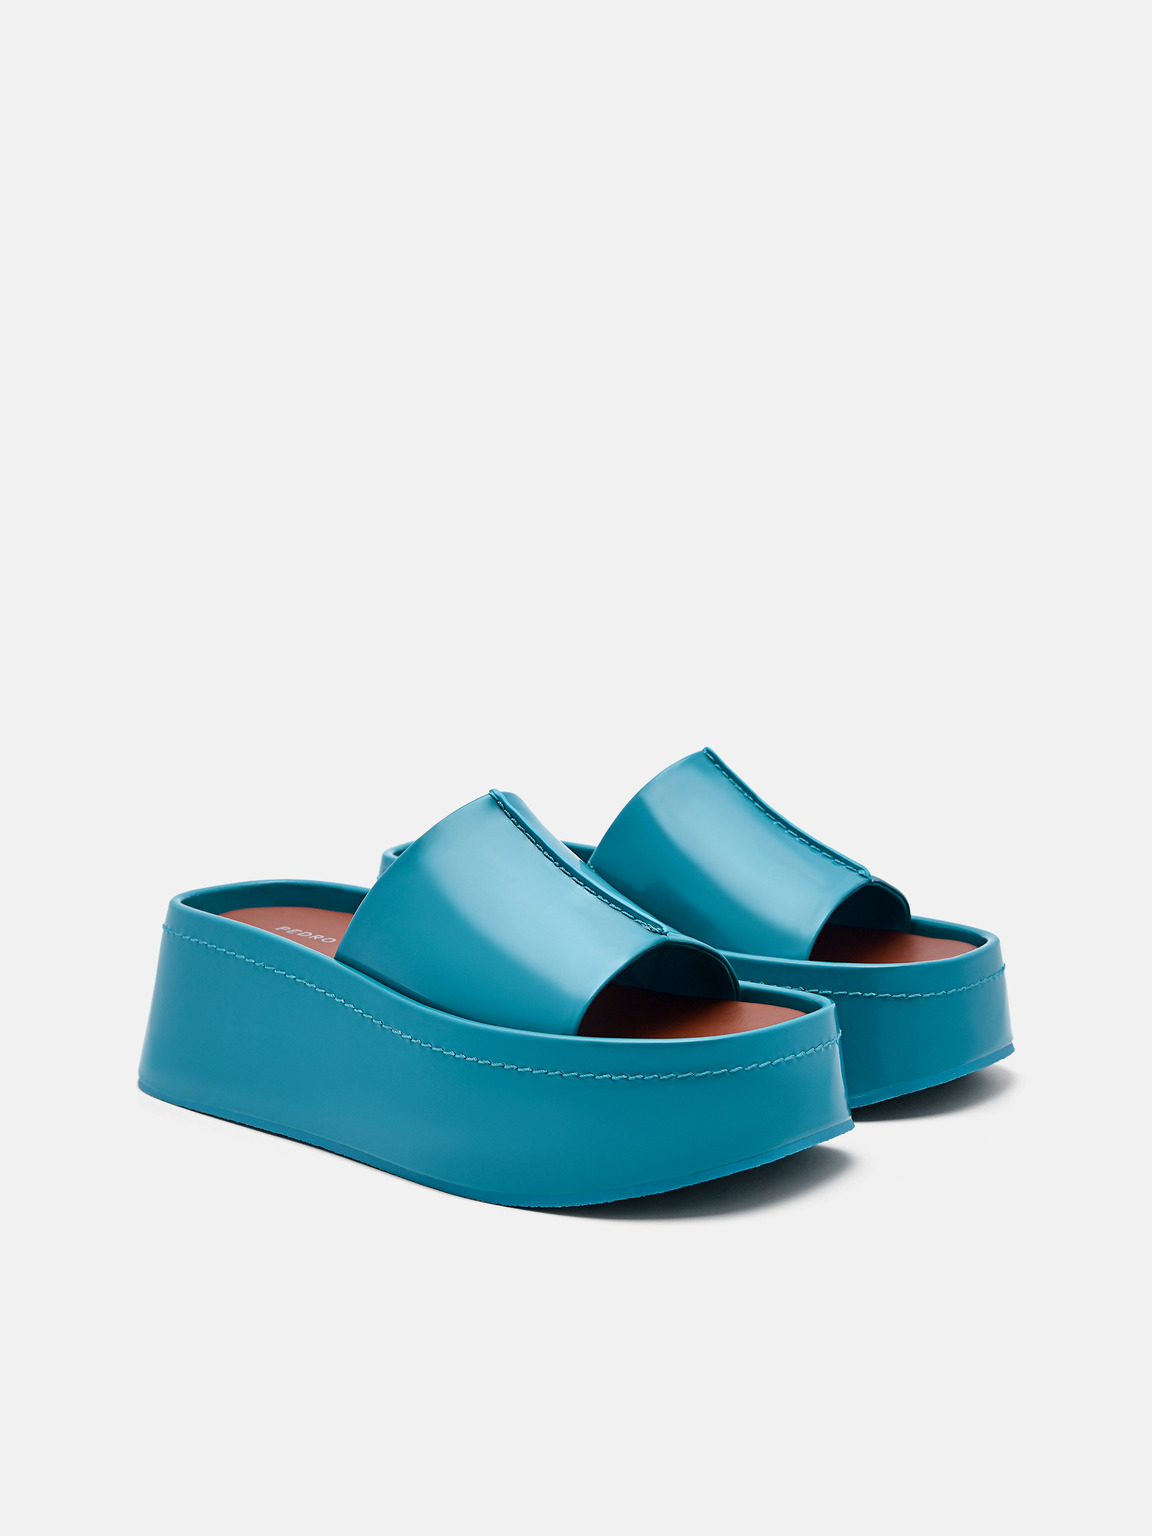 Carmen Platform Sandals, Turquoise